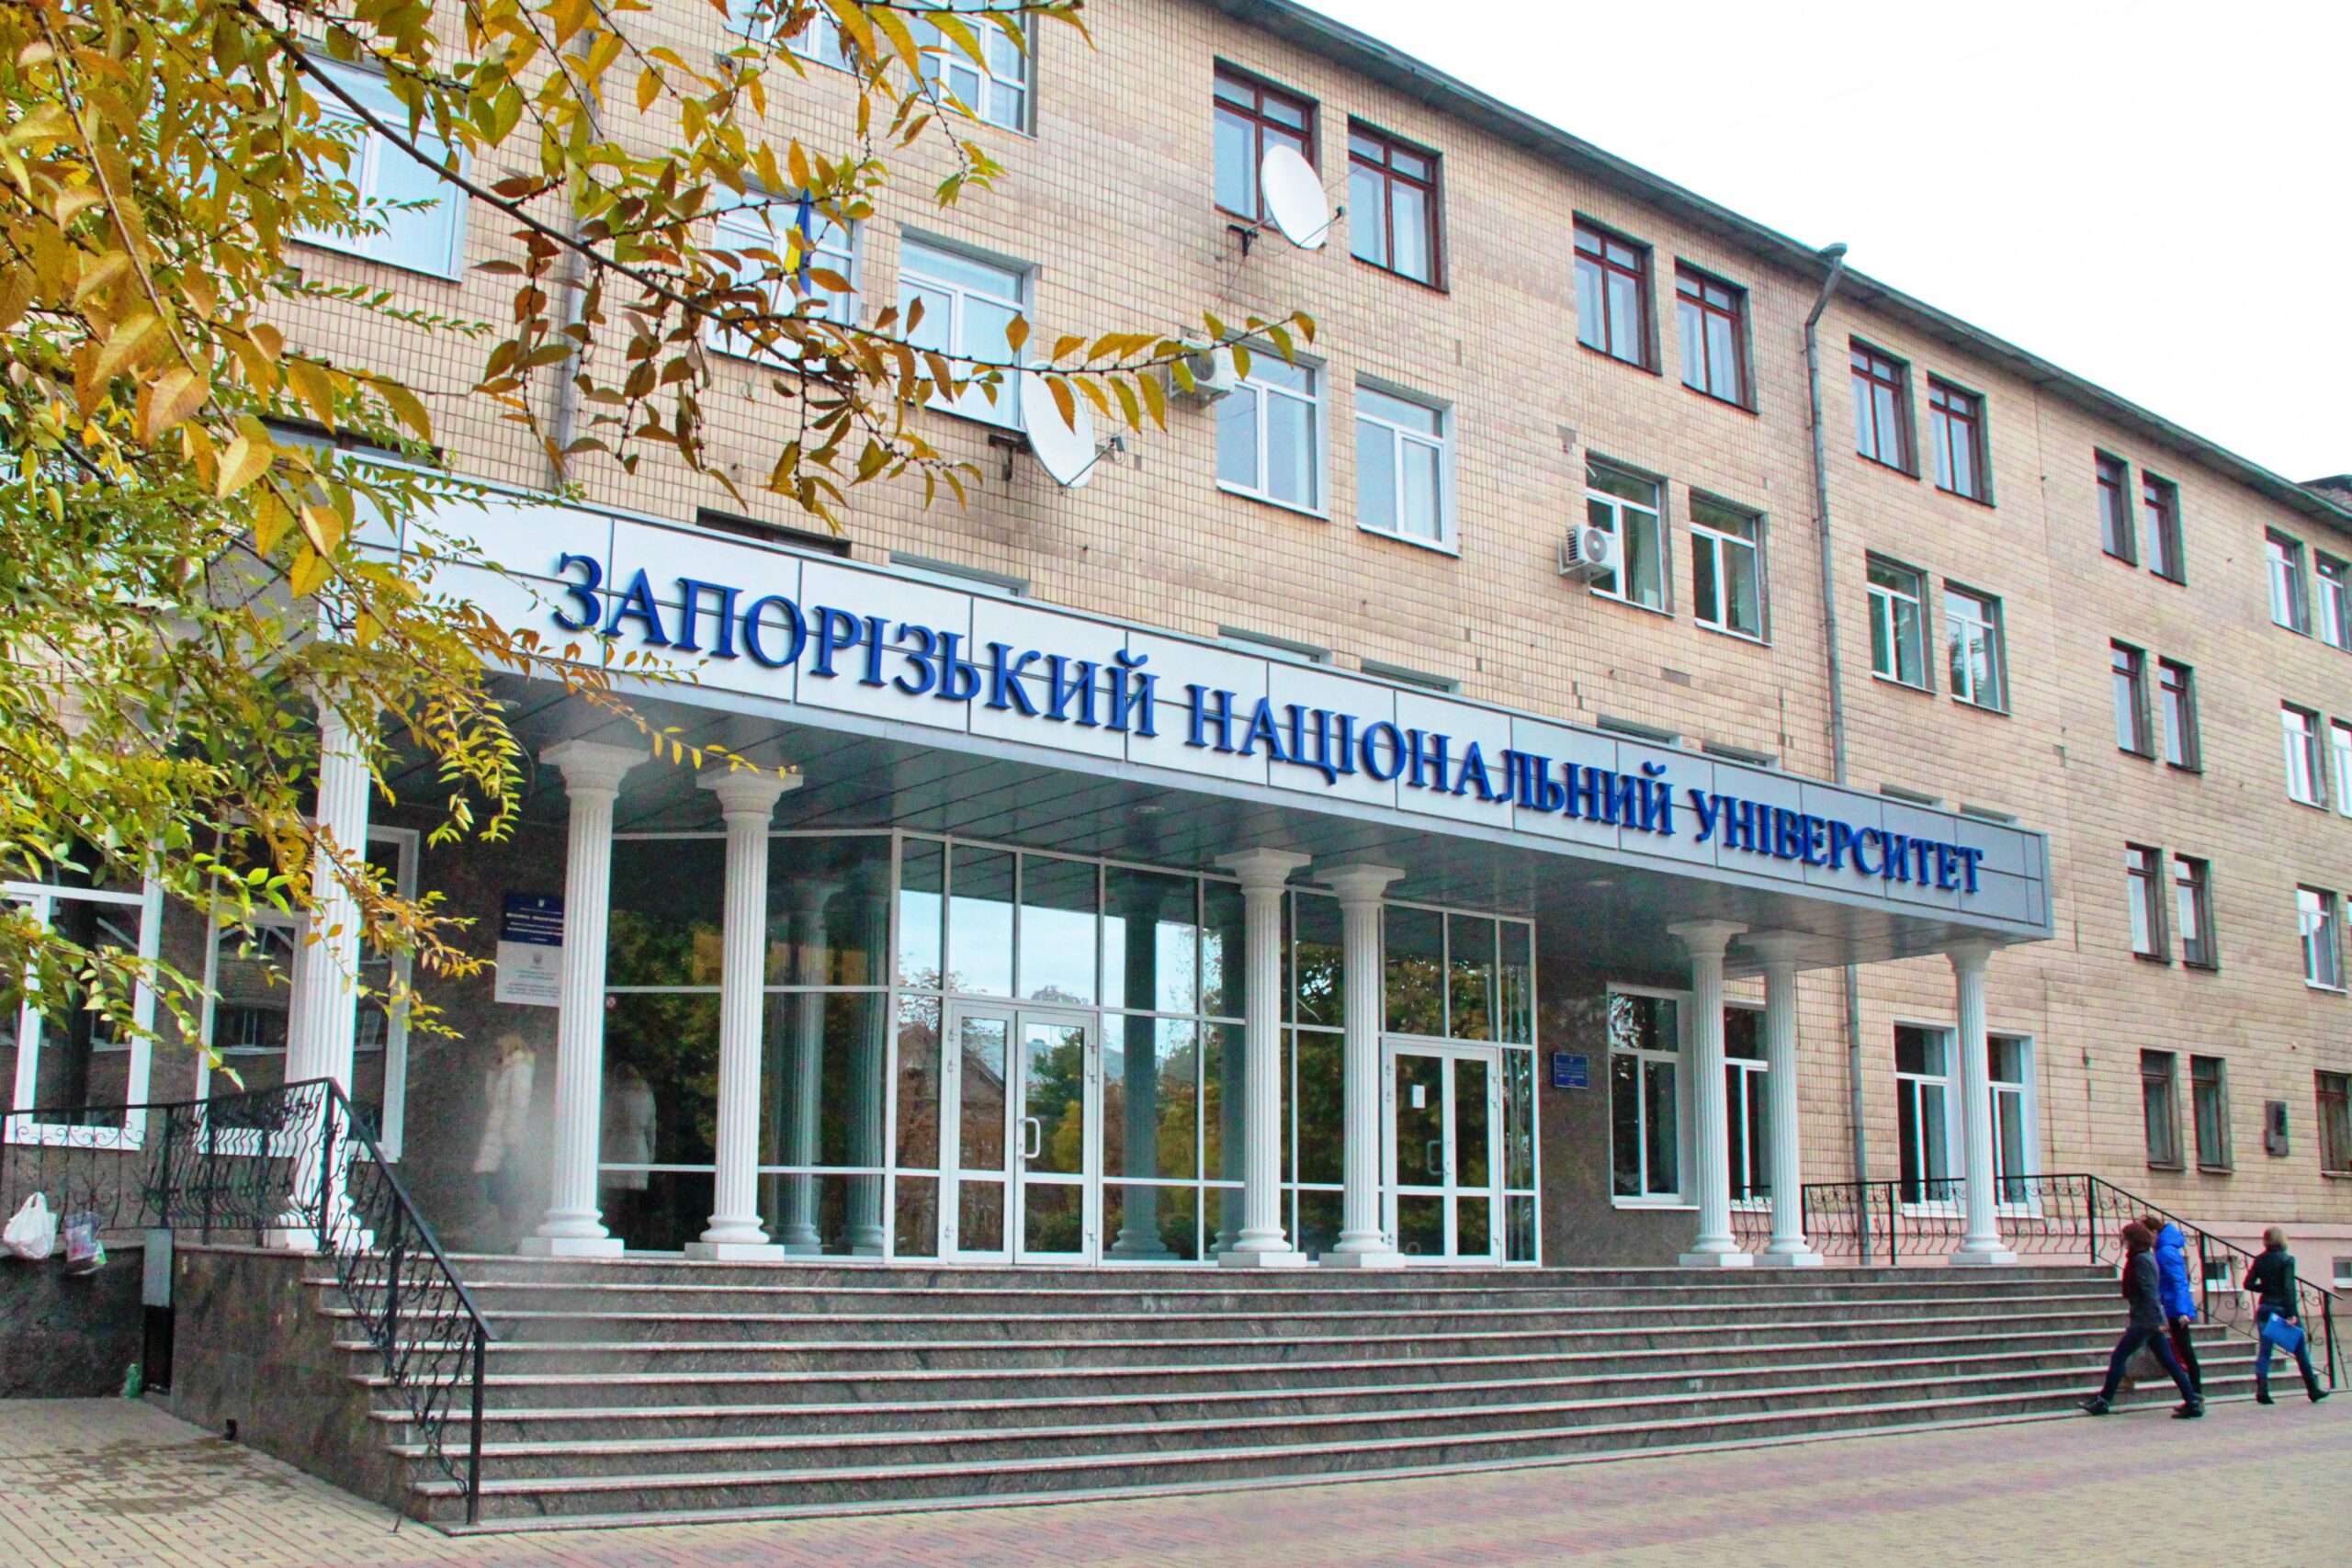 Запорожский национальный университет не закрыли на карантин, несмотря на недостаточное количество вакцинированных